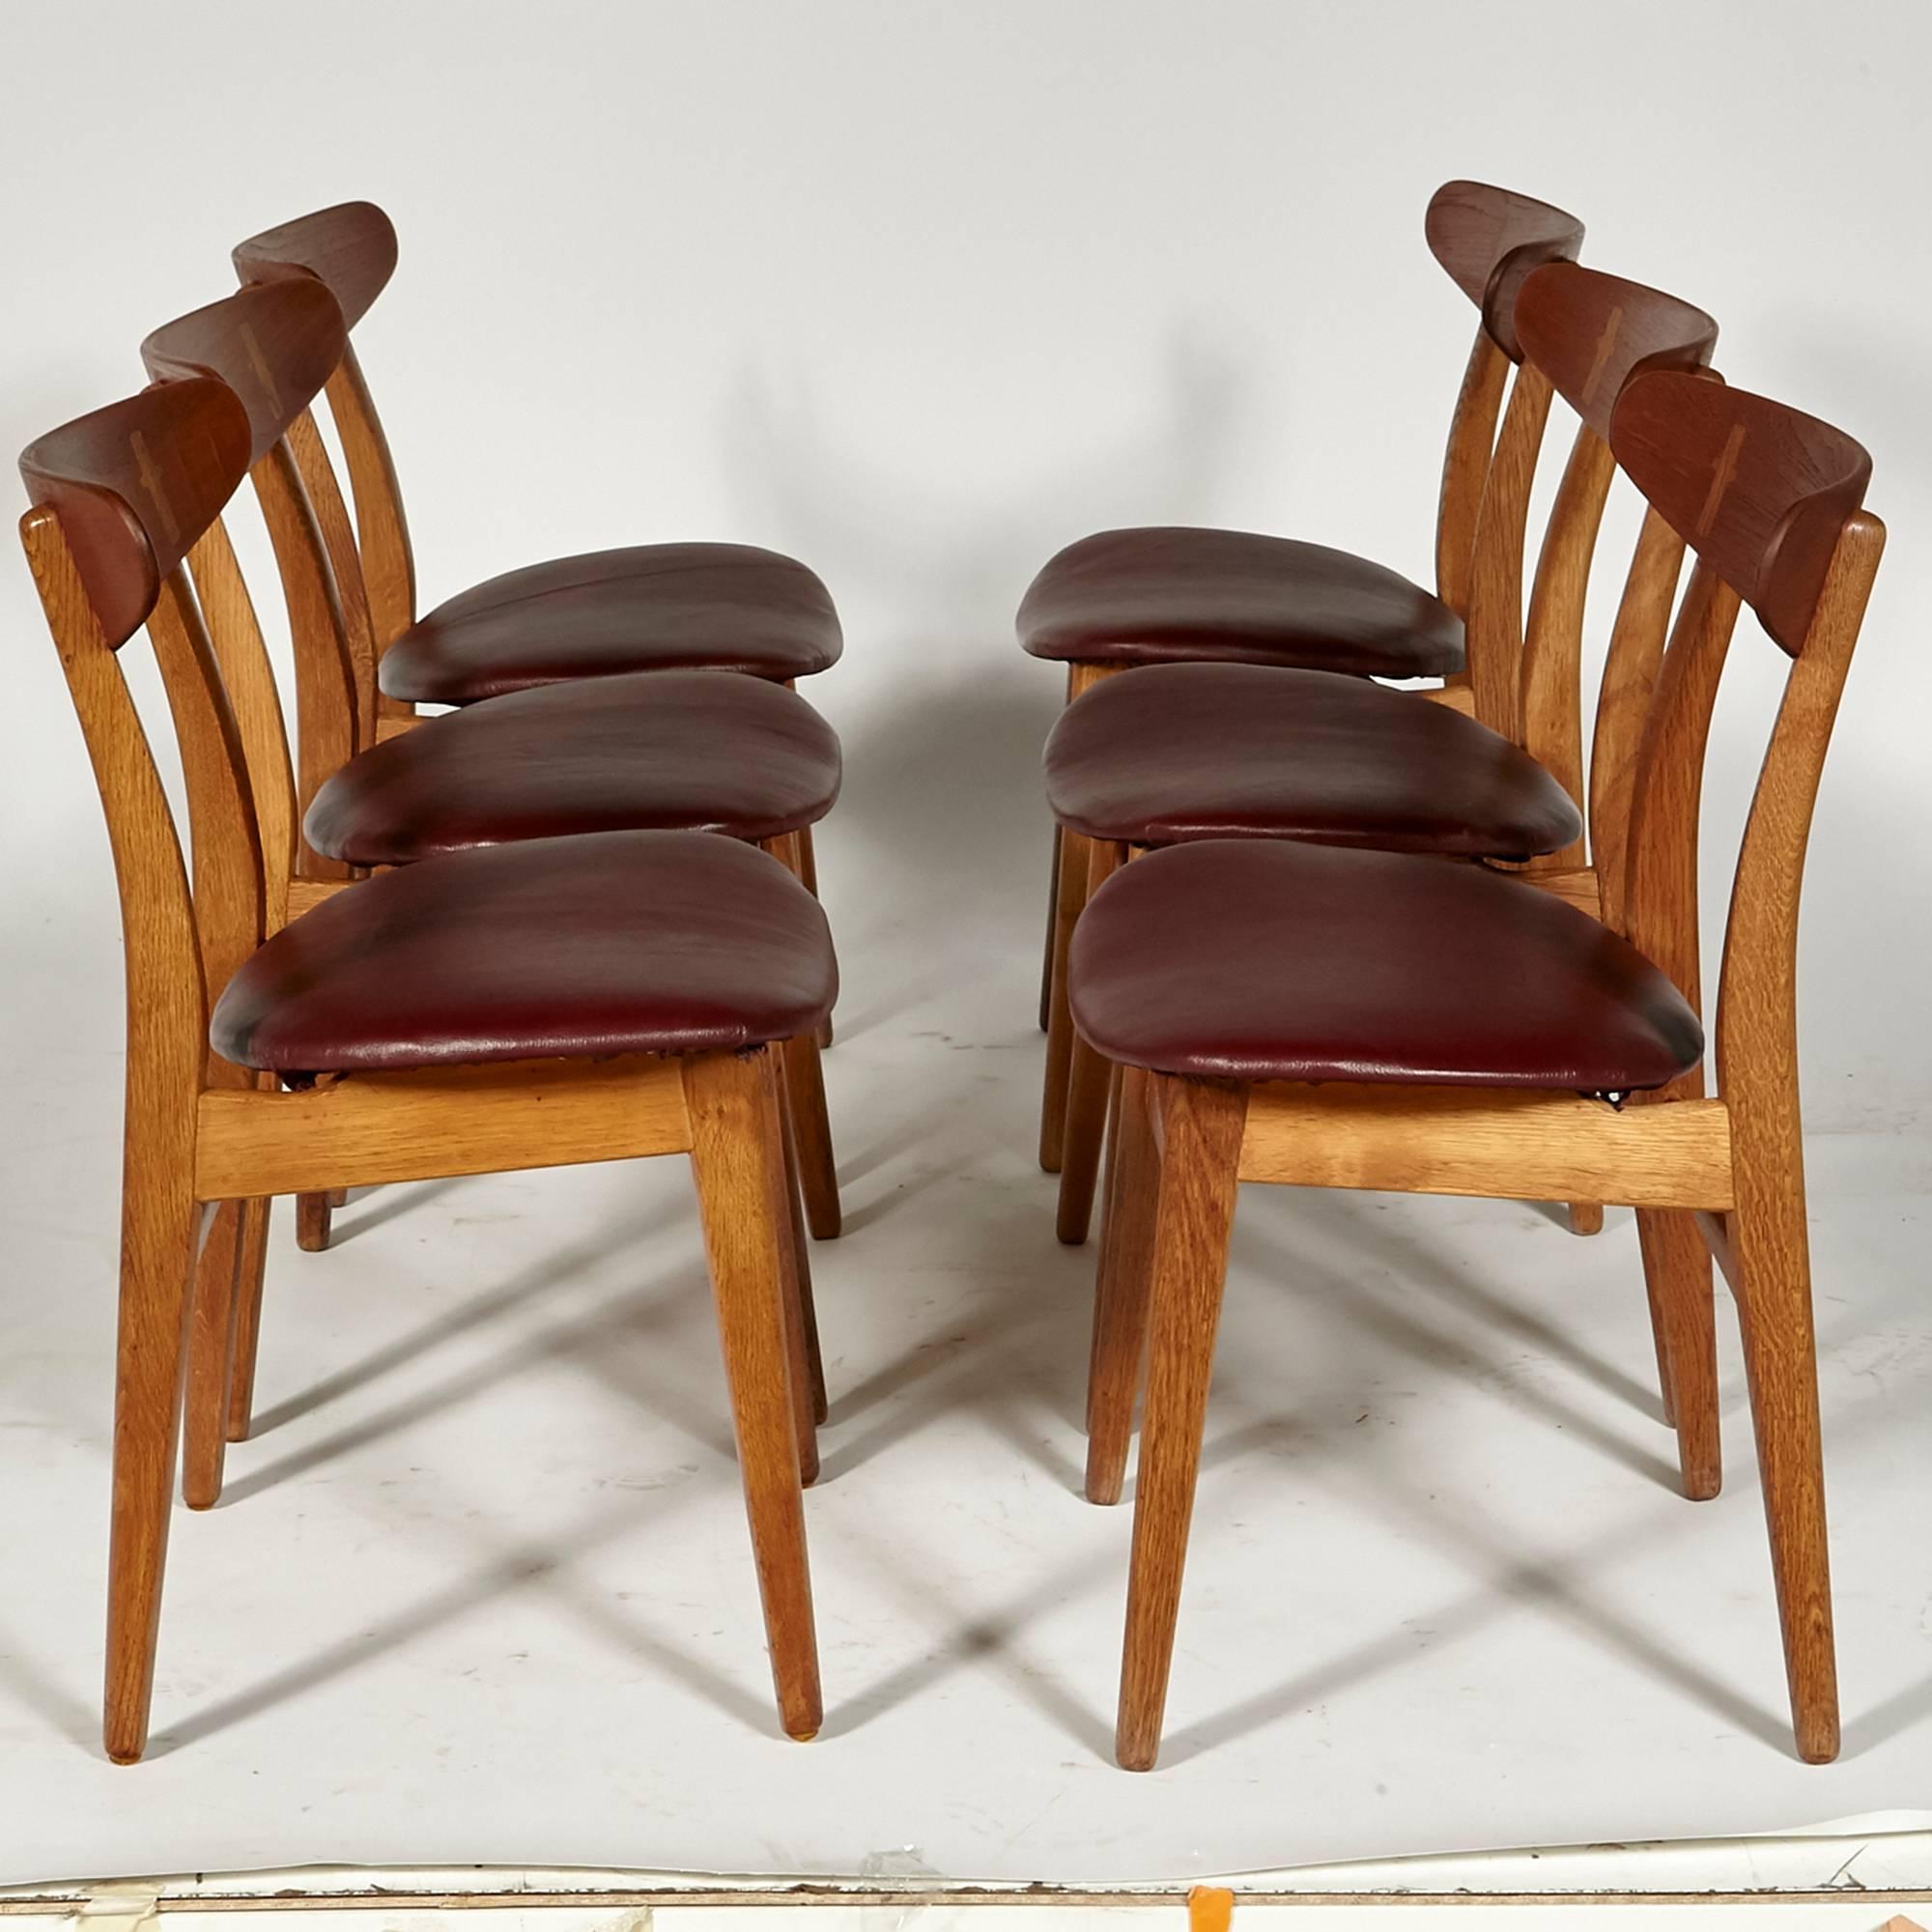 Scandinavian Modern Hans J Wegner for Carl Hansen Teak Dining Chairs 1951 Denmark, Set of Six